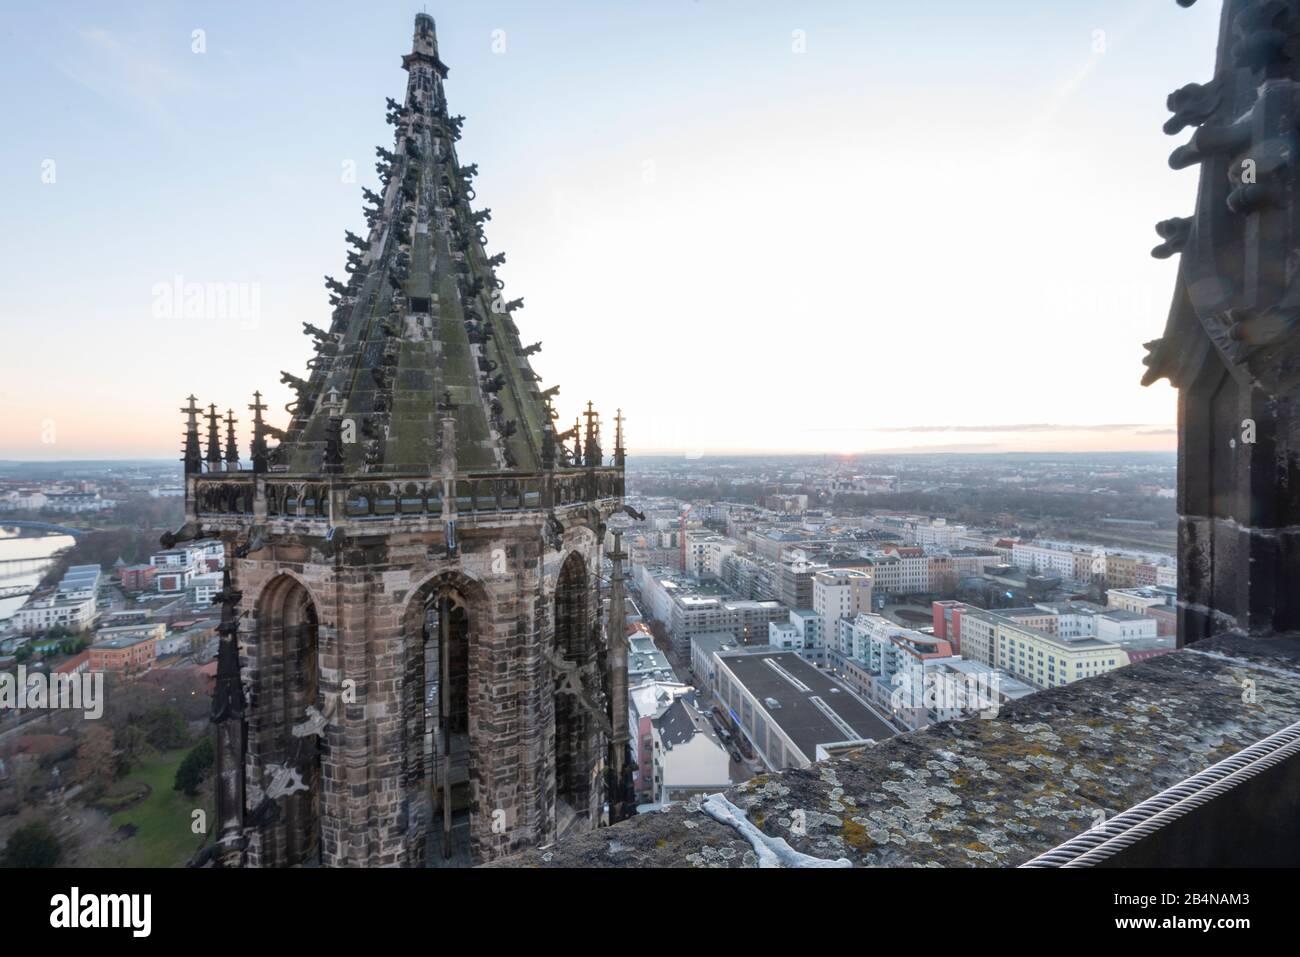 Deutschland, Sachsen-Anhalt, Magdeburg, Blick auf den Südturm des Doms, Sonnenuntergang am Horizont. Stock Photo